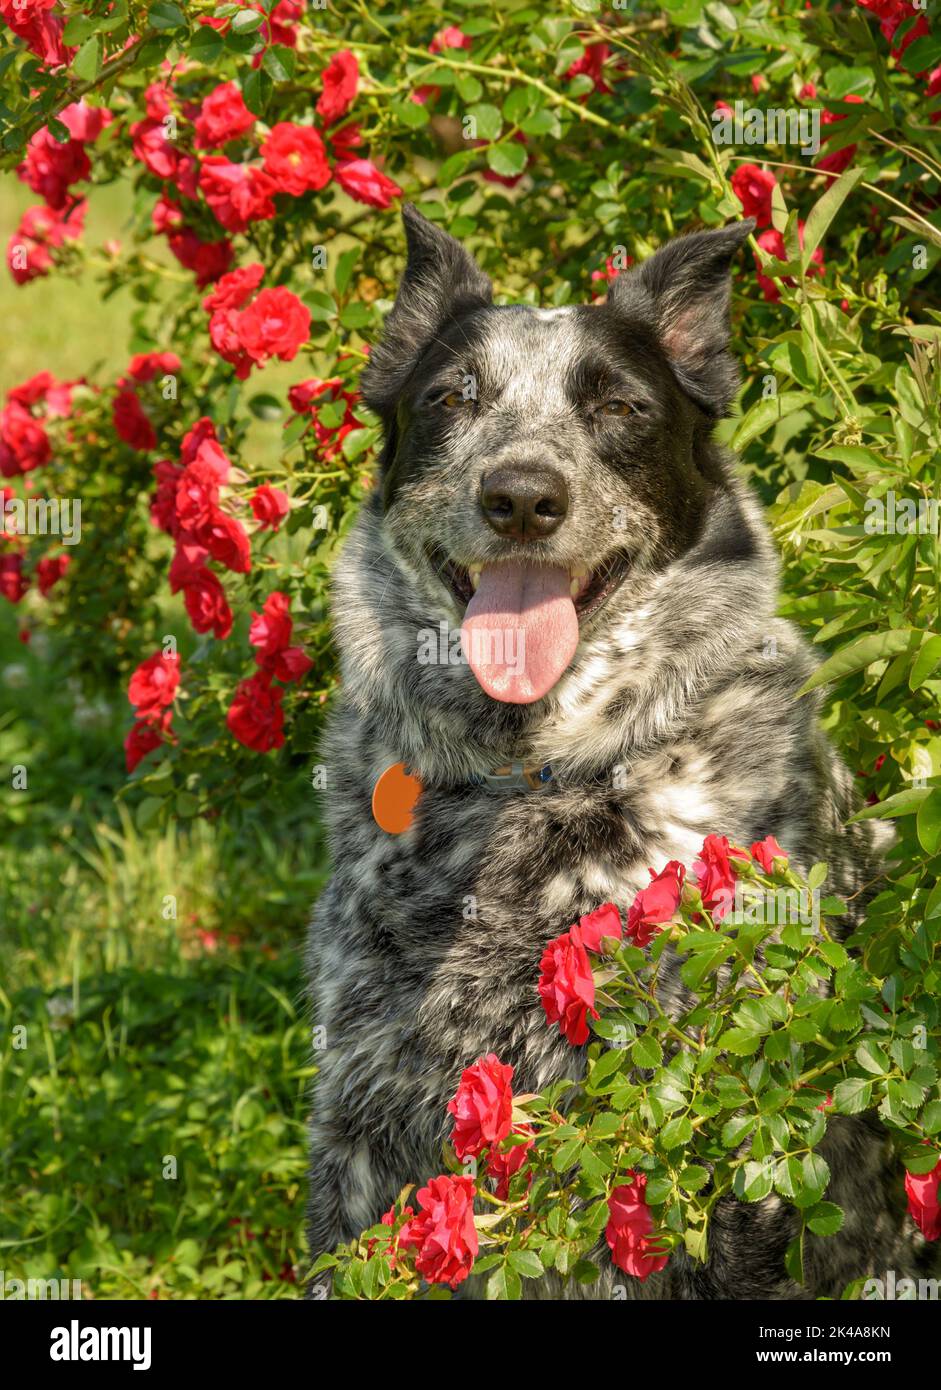 Perro manchado blanco y negro rodeado de rosas rojas en el sol de verano; mirando al espectador Foto de stock